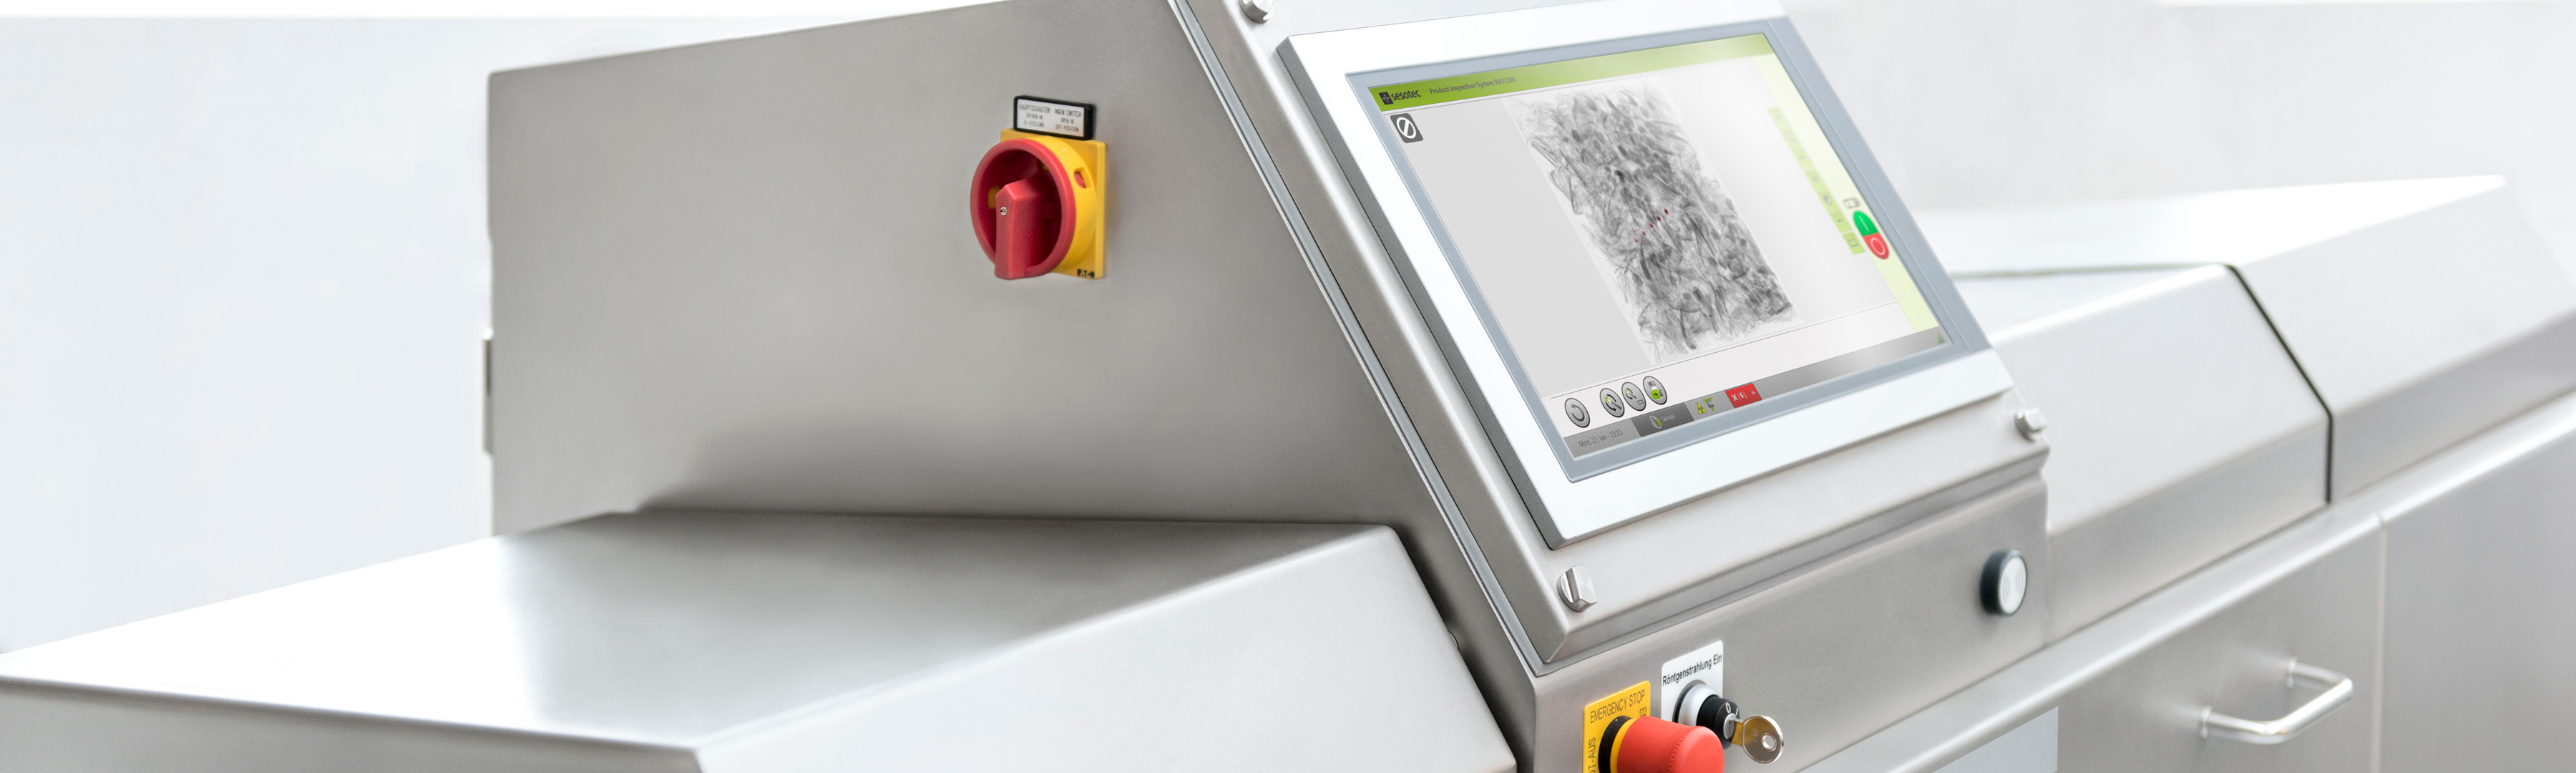 سیستم های بازرسی اشعه ایکس برای کنترل نهایی محصولات